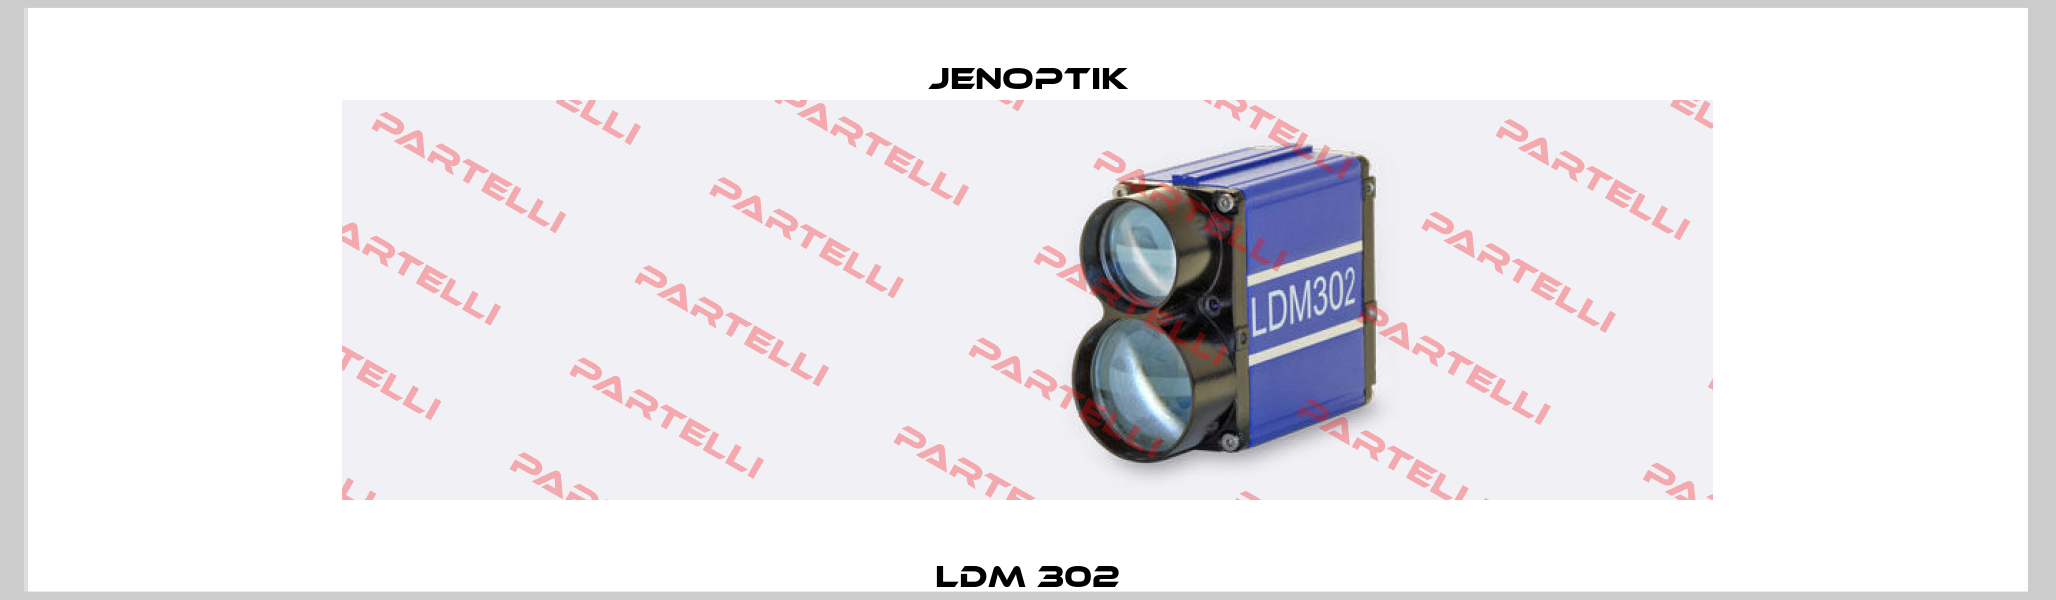 LDM 302 Jenoptik